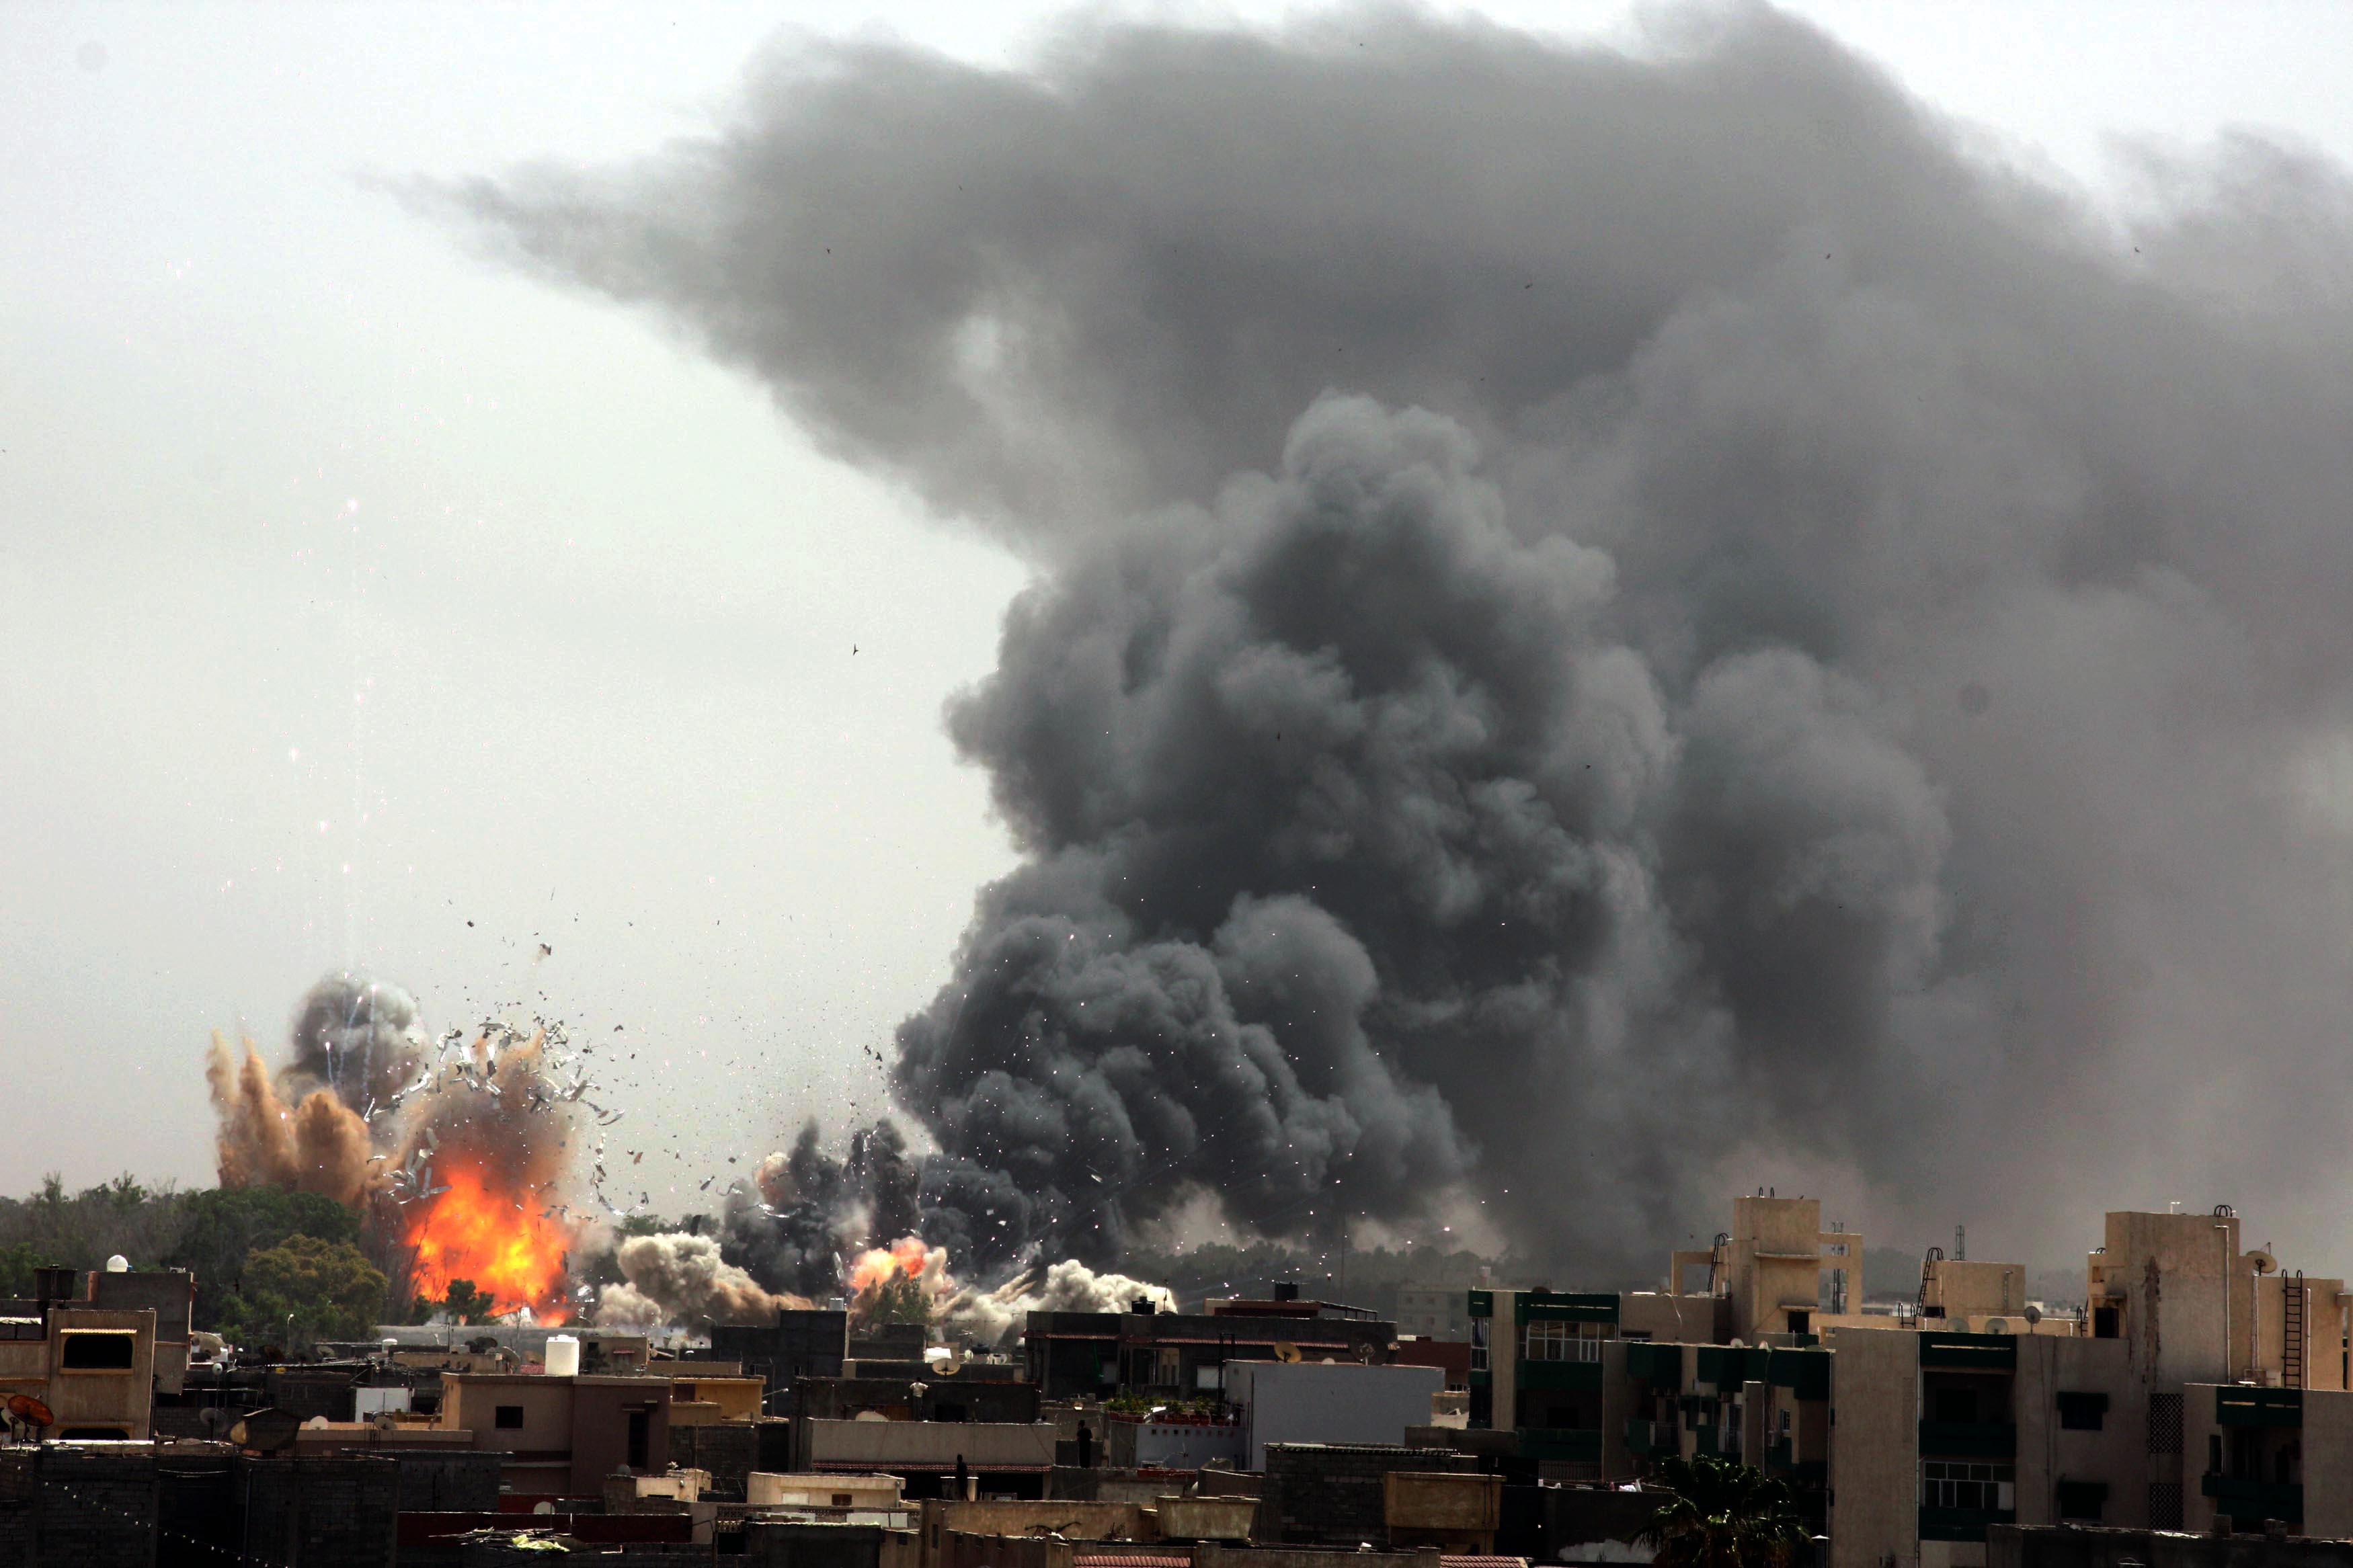 利比亚十年回望:没有自由民主,只有子弹呼啸